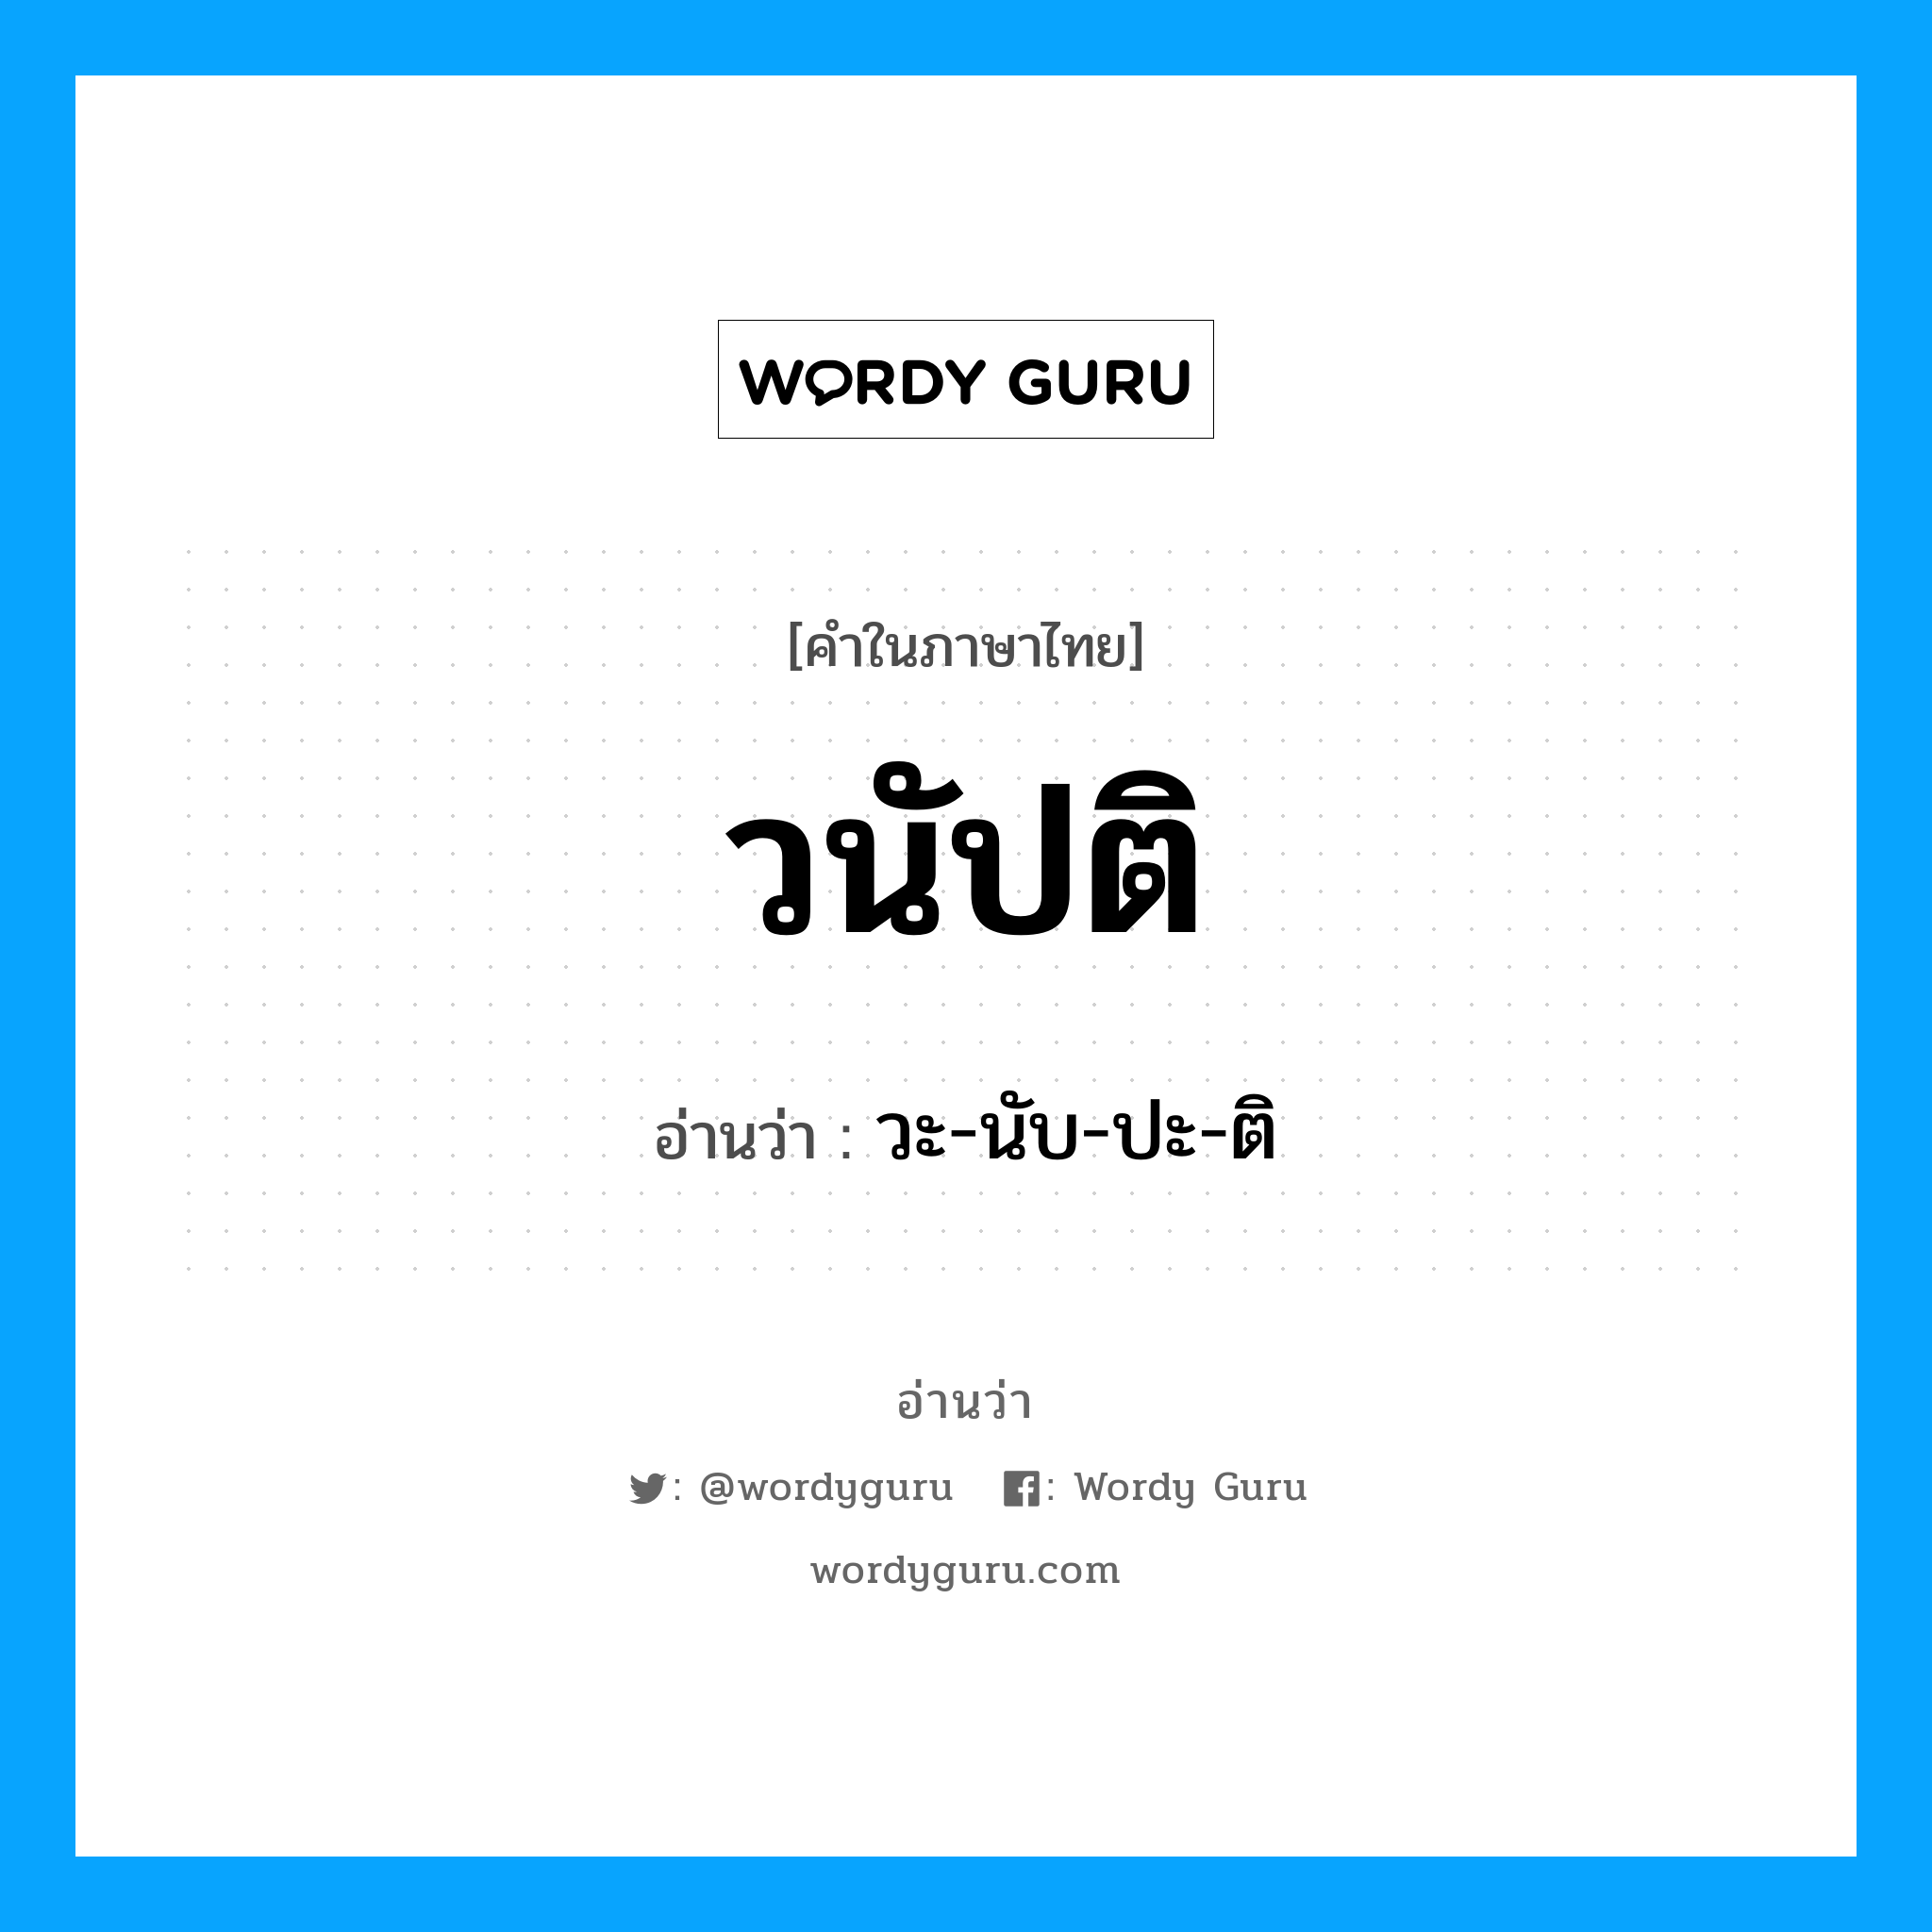 วะ-นับ-ปะ-ติ เป็นคำอ่านของคำไหน?, คำในภาษาไทย วะ-นับ-ปะ-ติ อ่านว่า วนัปติ